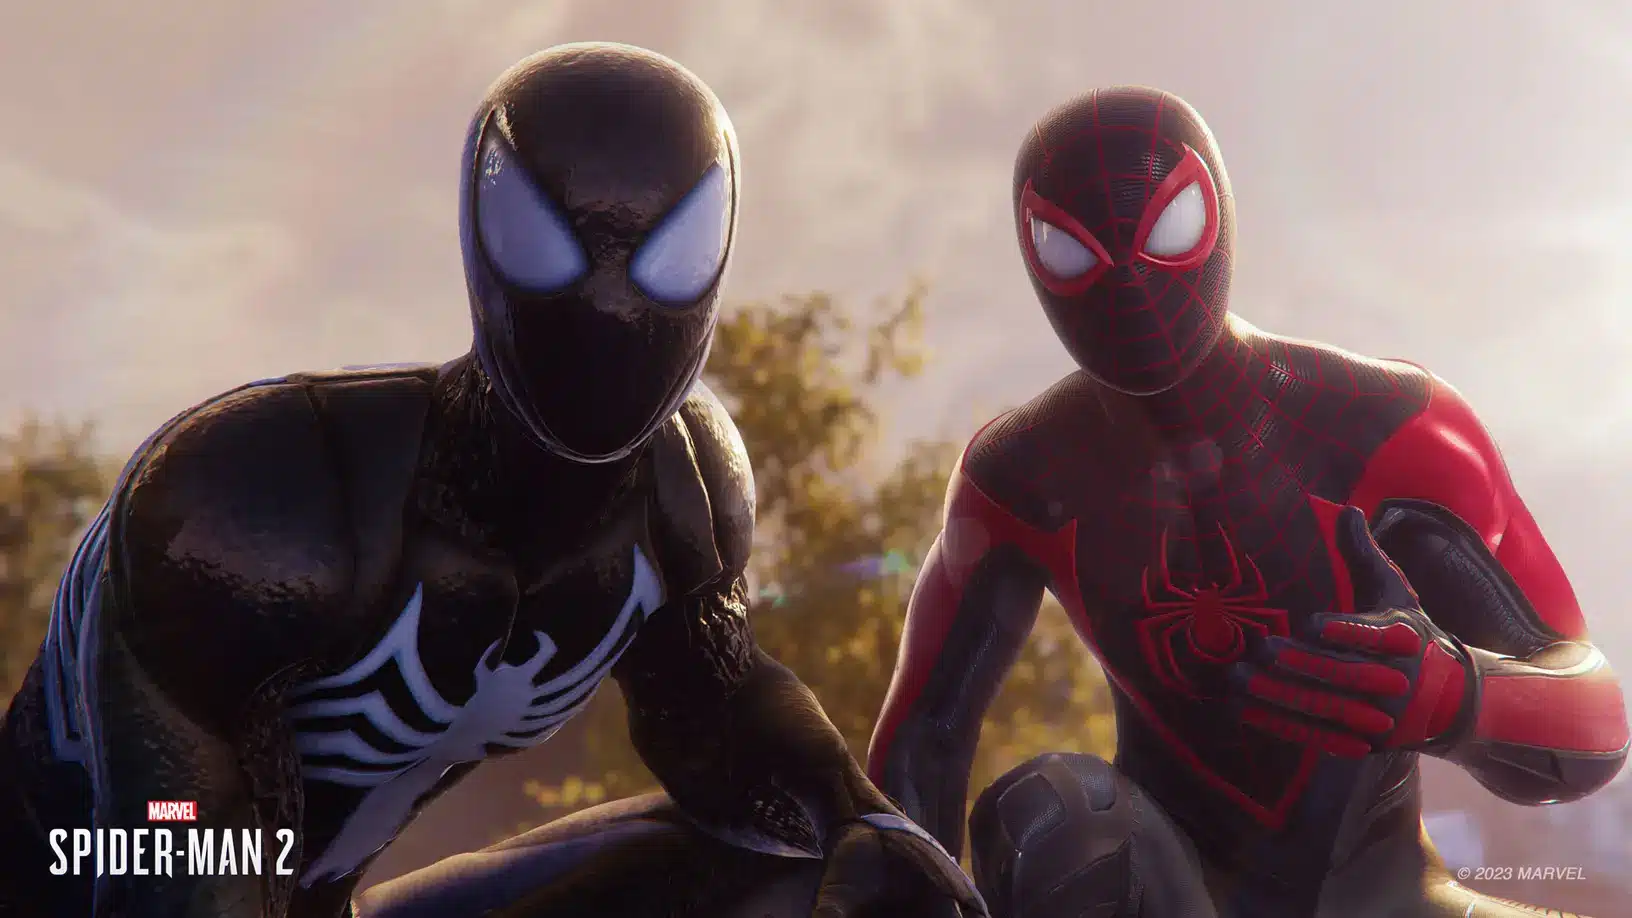 Jogamos: Spider-Man 2 evolui gameplay que já era incrível e empolga